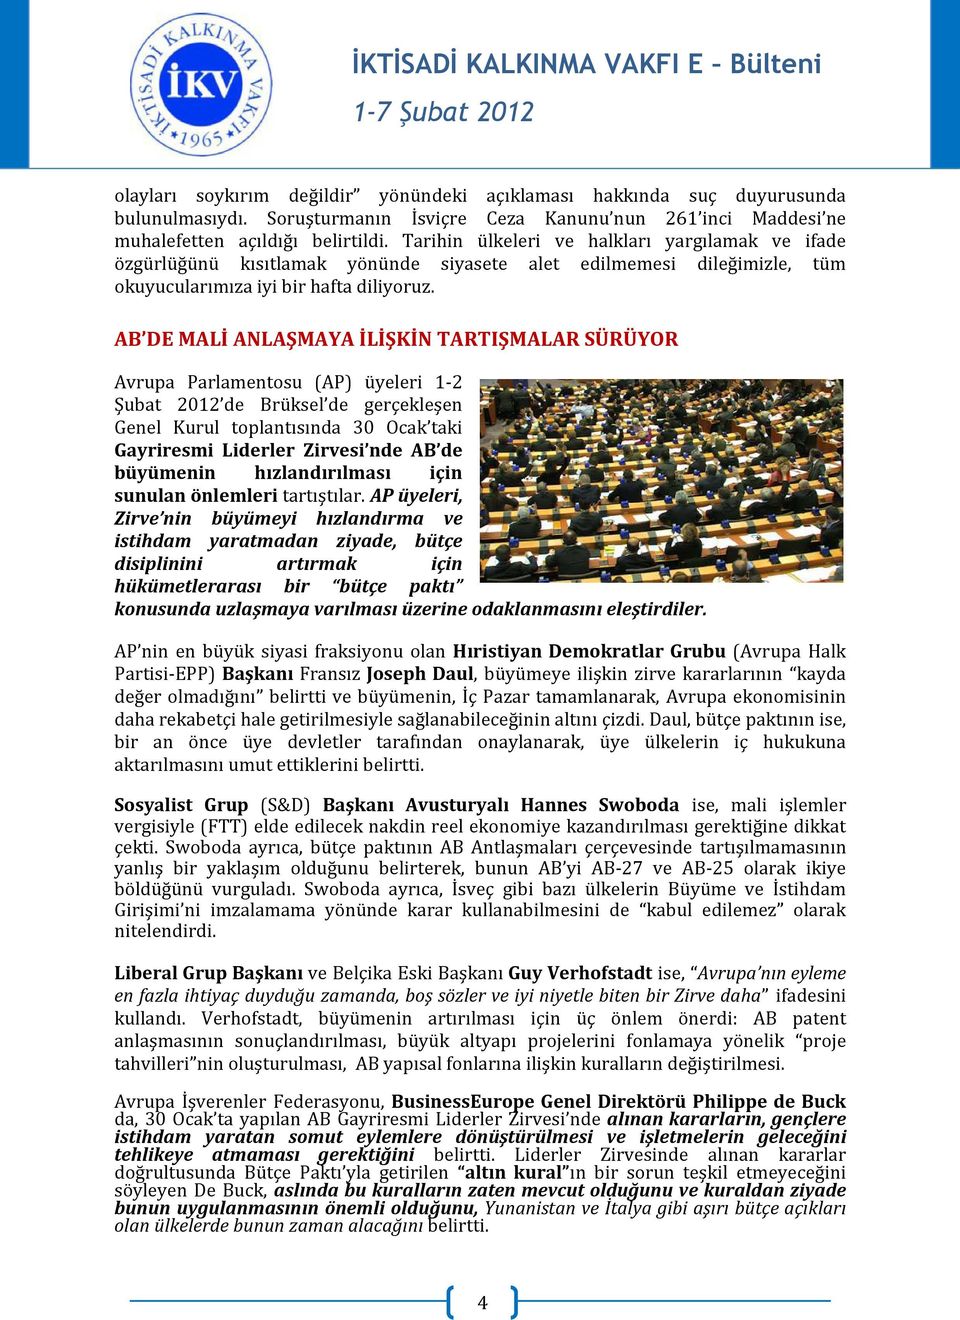 AB DE MALİ ANLAŞMAYA İLİŞKİN TARTIŞMALAR SÜRÜYOR Avrupa Parlamentosu (AP) üyeleri 1-2 Şubat 2012 de Brüksel de gerçekleşen Genel Kurul toplantısında 30 Ocak taki Gayriresmi Liderler Zirvesi nde AB de